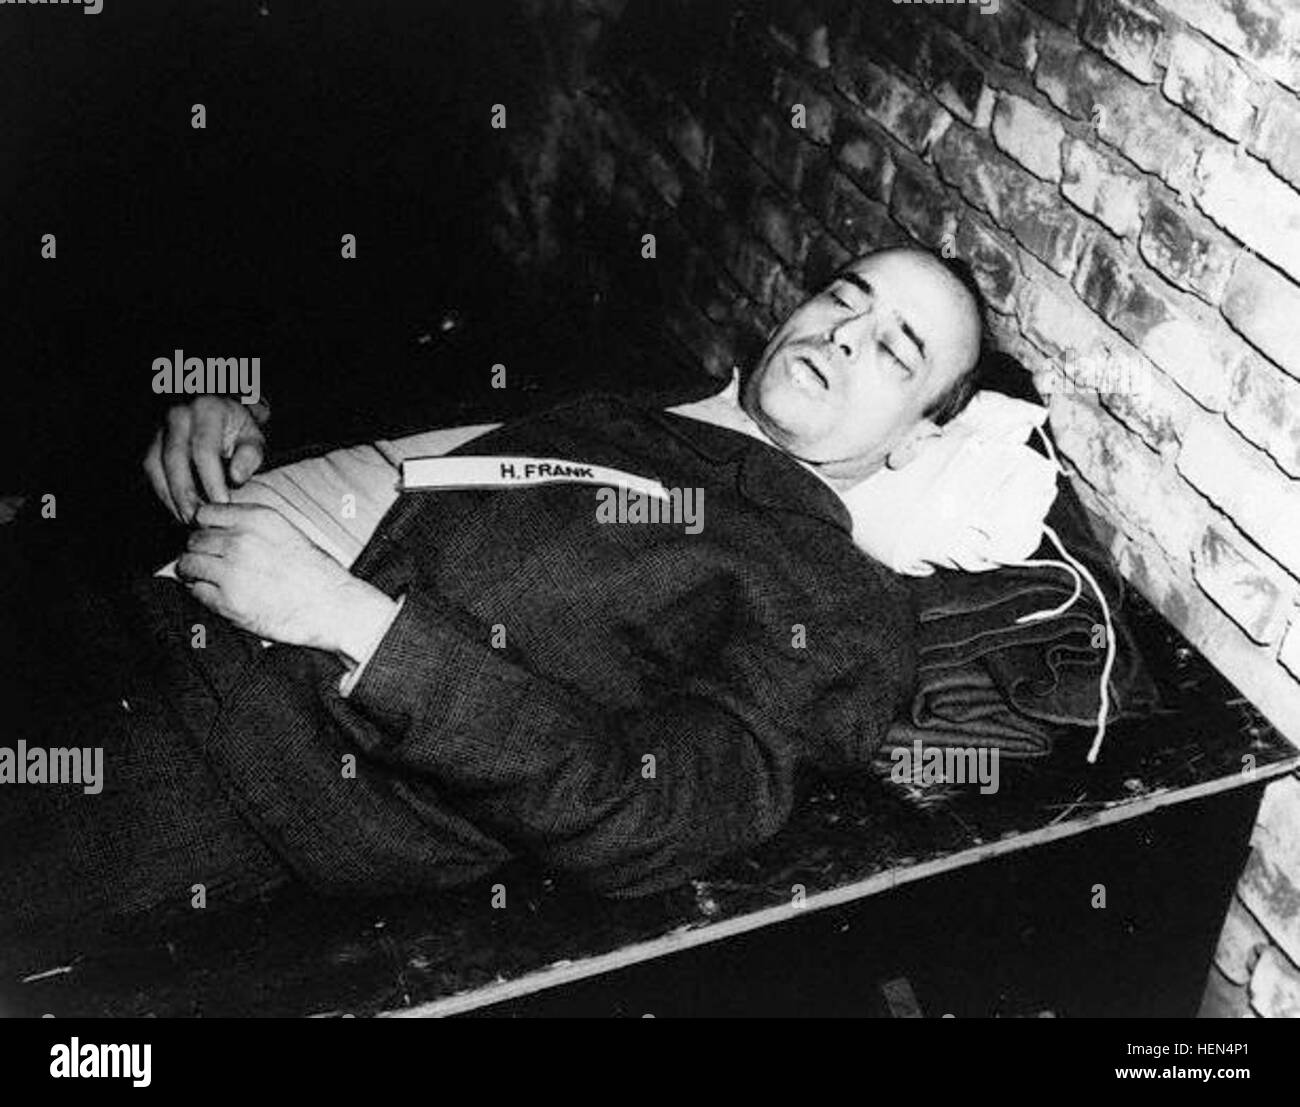 Octobre 1946, Nuremberg, Allemagne --- le cadavre d'un criminel de guerre Nazi Hans Frank après son exécution par pendaison. Frank, le gouverneur de la Pologne après l'invasion en 1939, a été jugé coupable de crimes de guerre et crimes contre l'humanité au procès de Nuremberg. Octobre 1946. --- Image par © CORBIS Mort hansfrank Banque D'Images